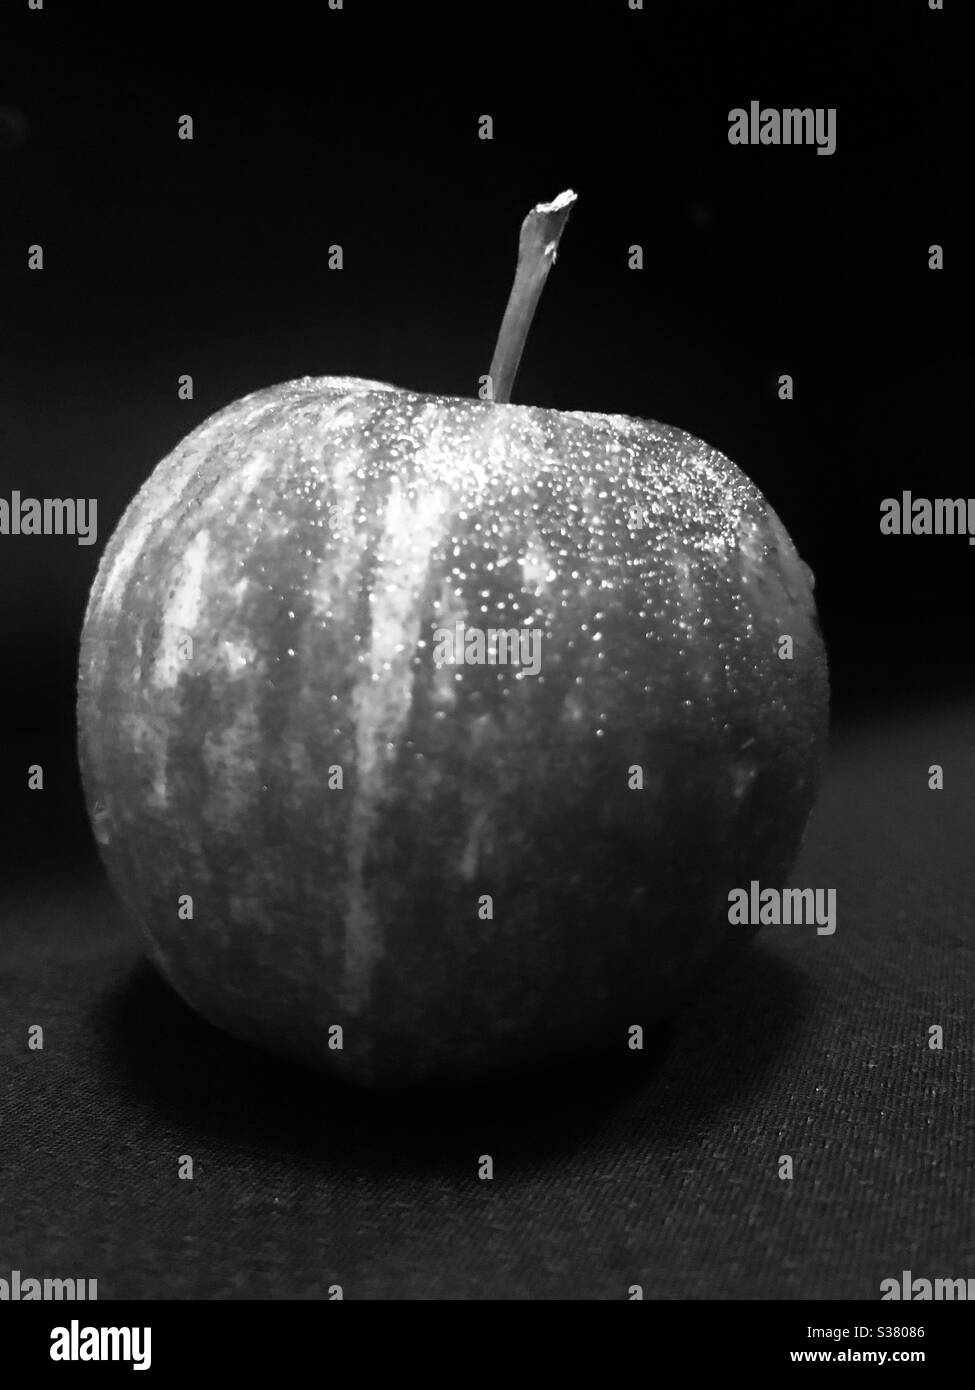 Aspect noir et blanc spectaculaire d'une pomme rouge avec des gouttes d'eau après avoir été écarée du réfrigérateur avant la consommation « une pomme par jour garde le médecin loin » Banque D'Images